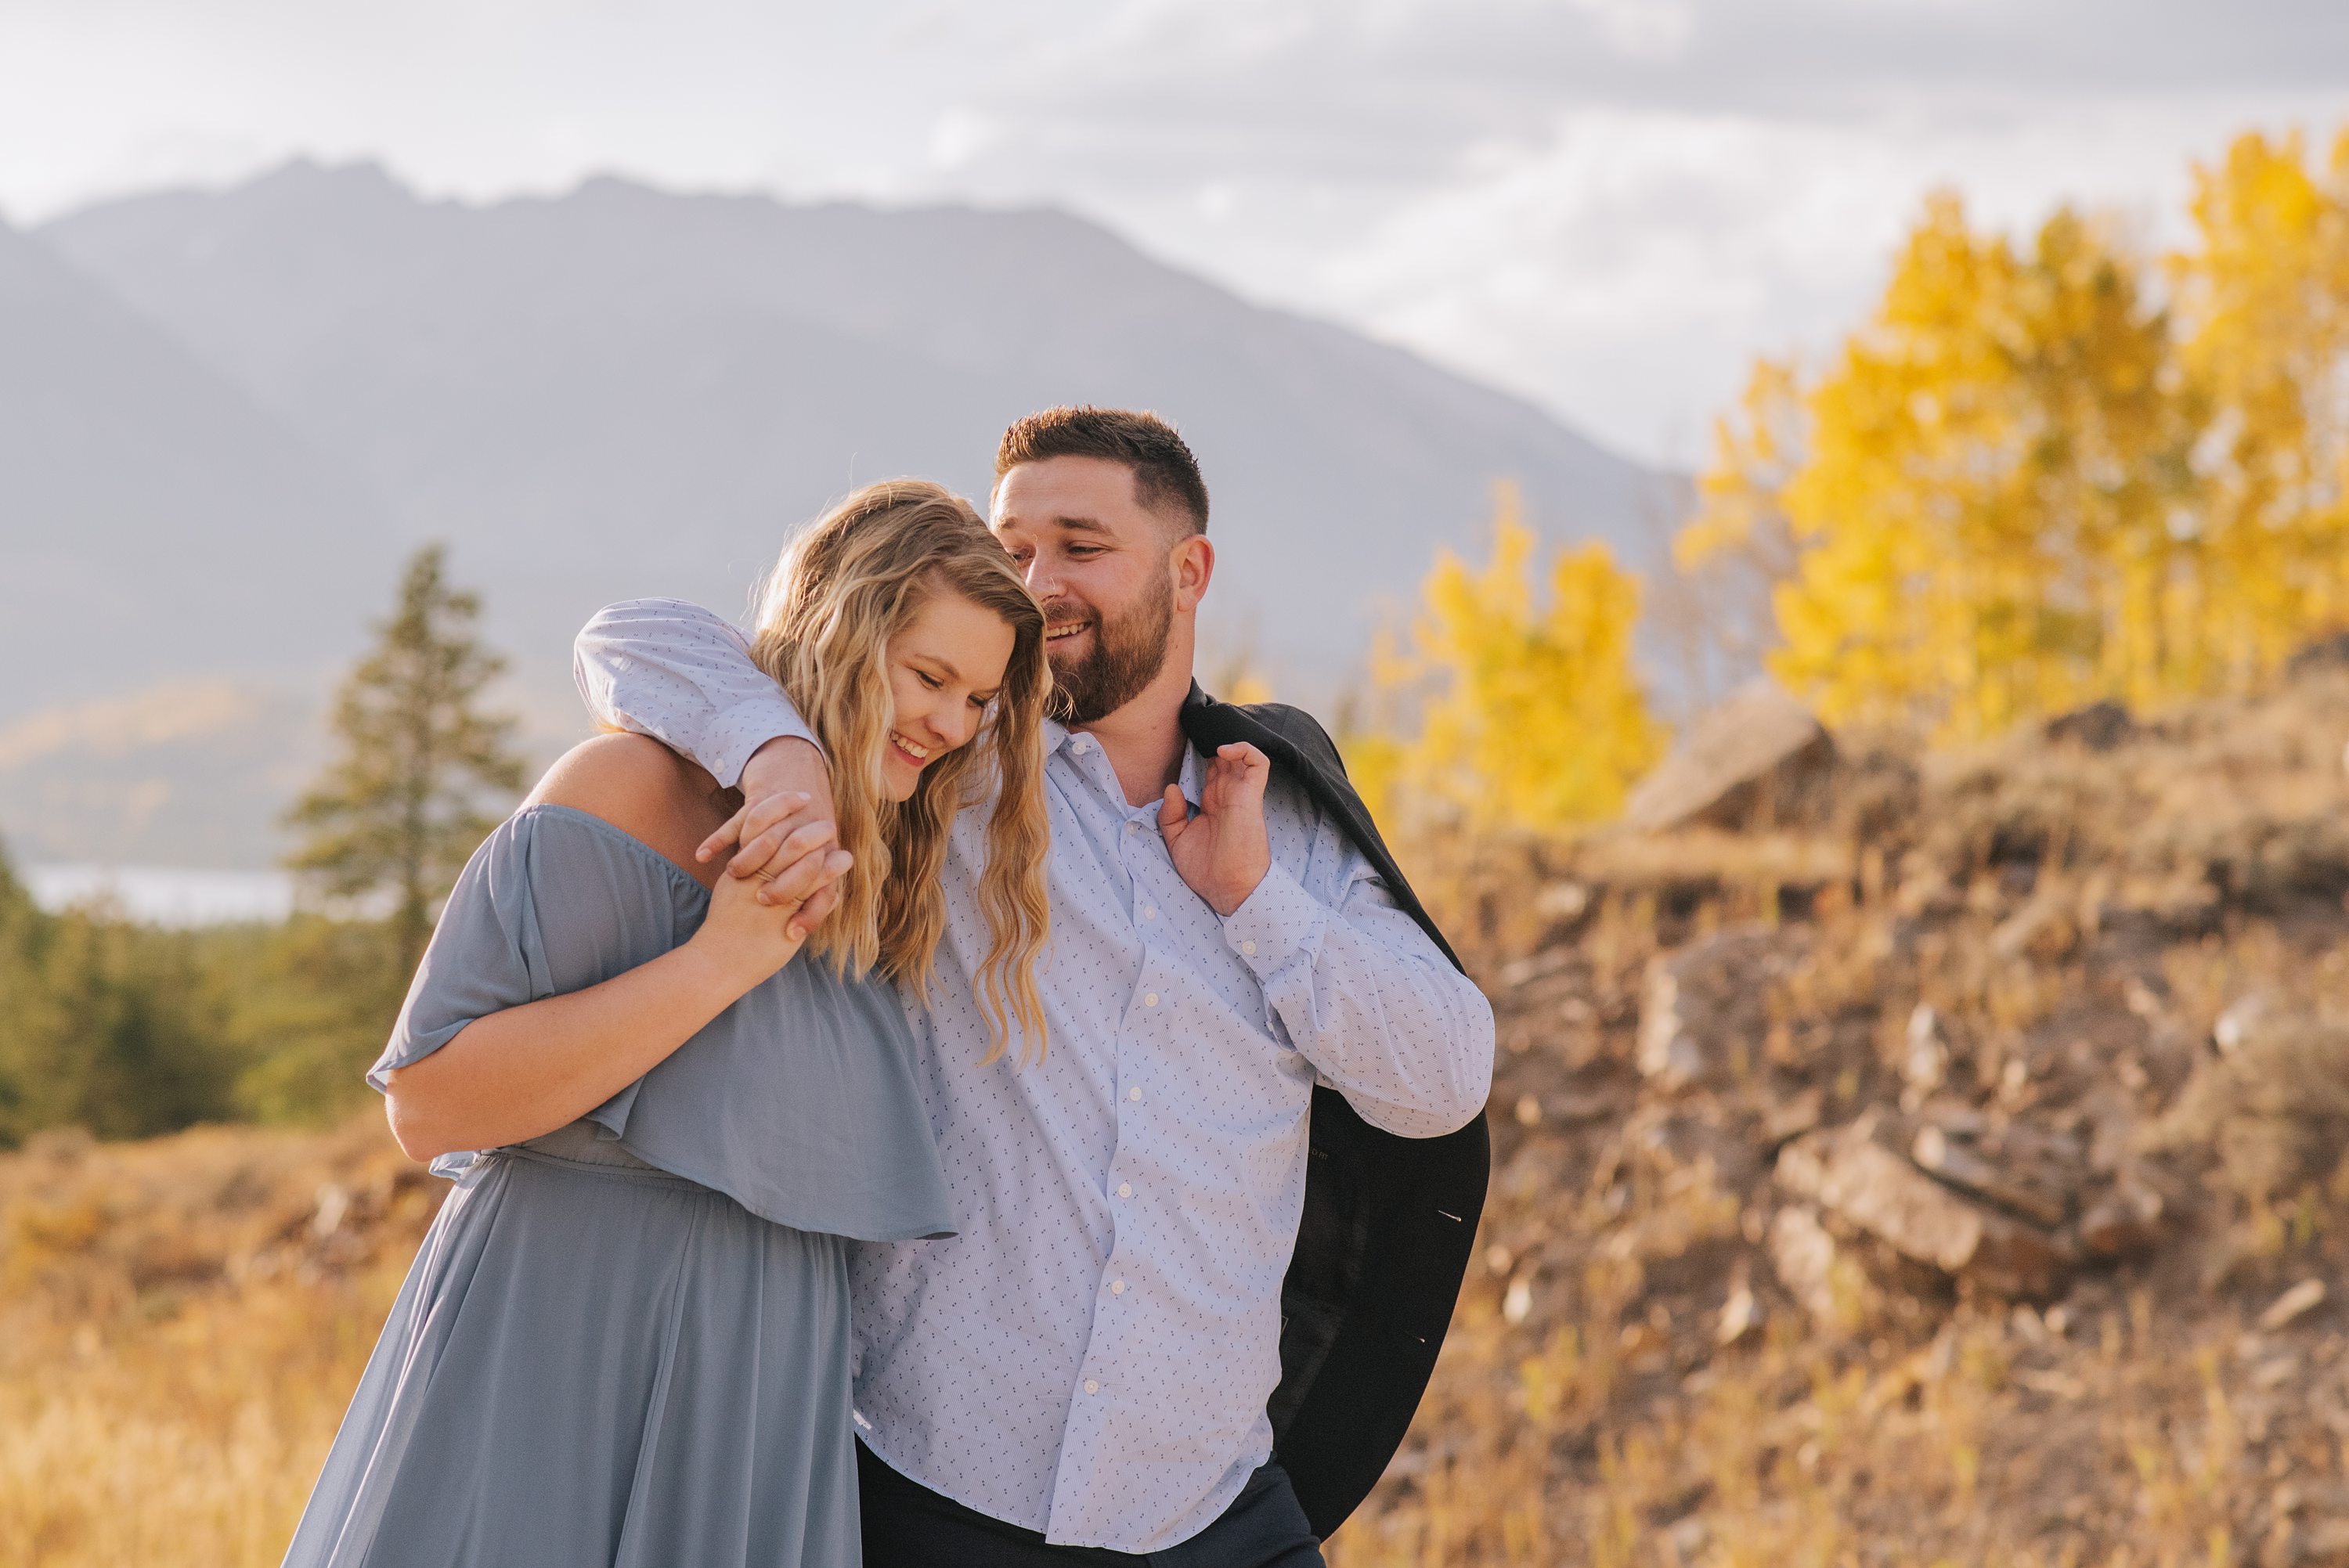  Colorado engagement photos, changing aspens